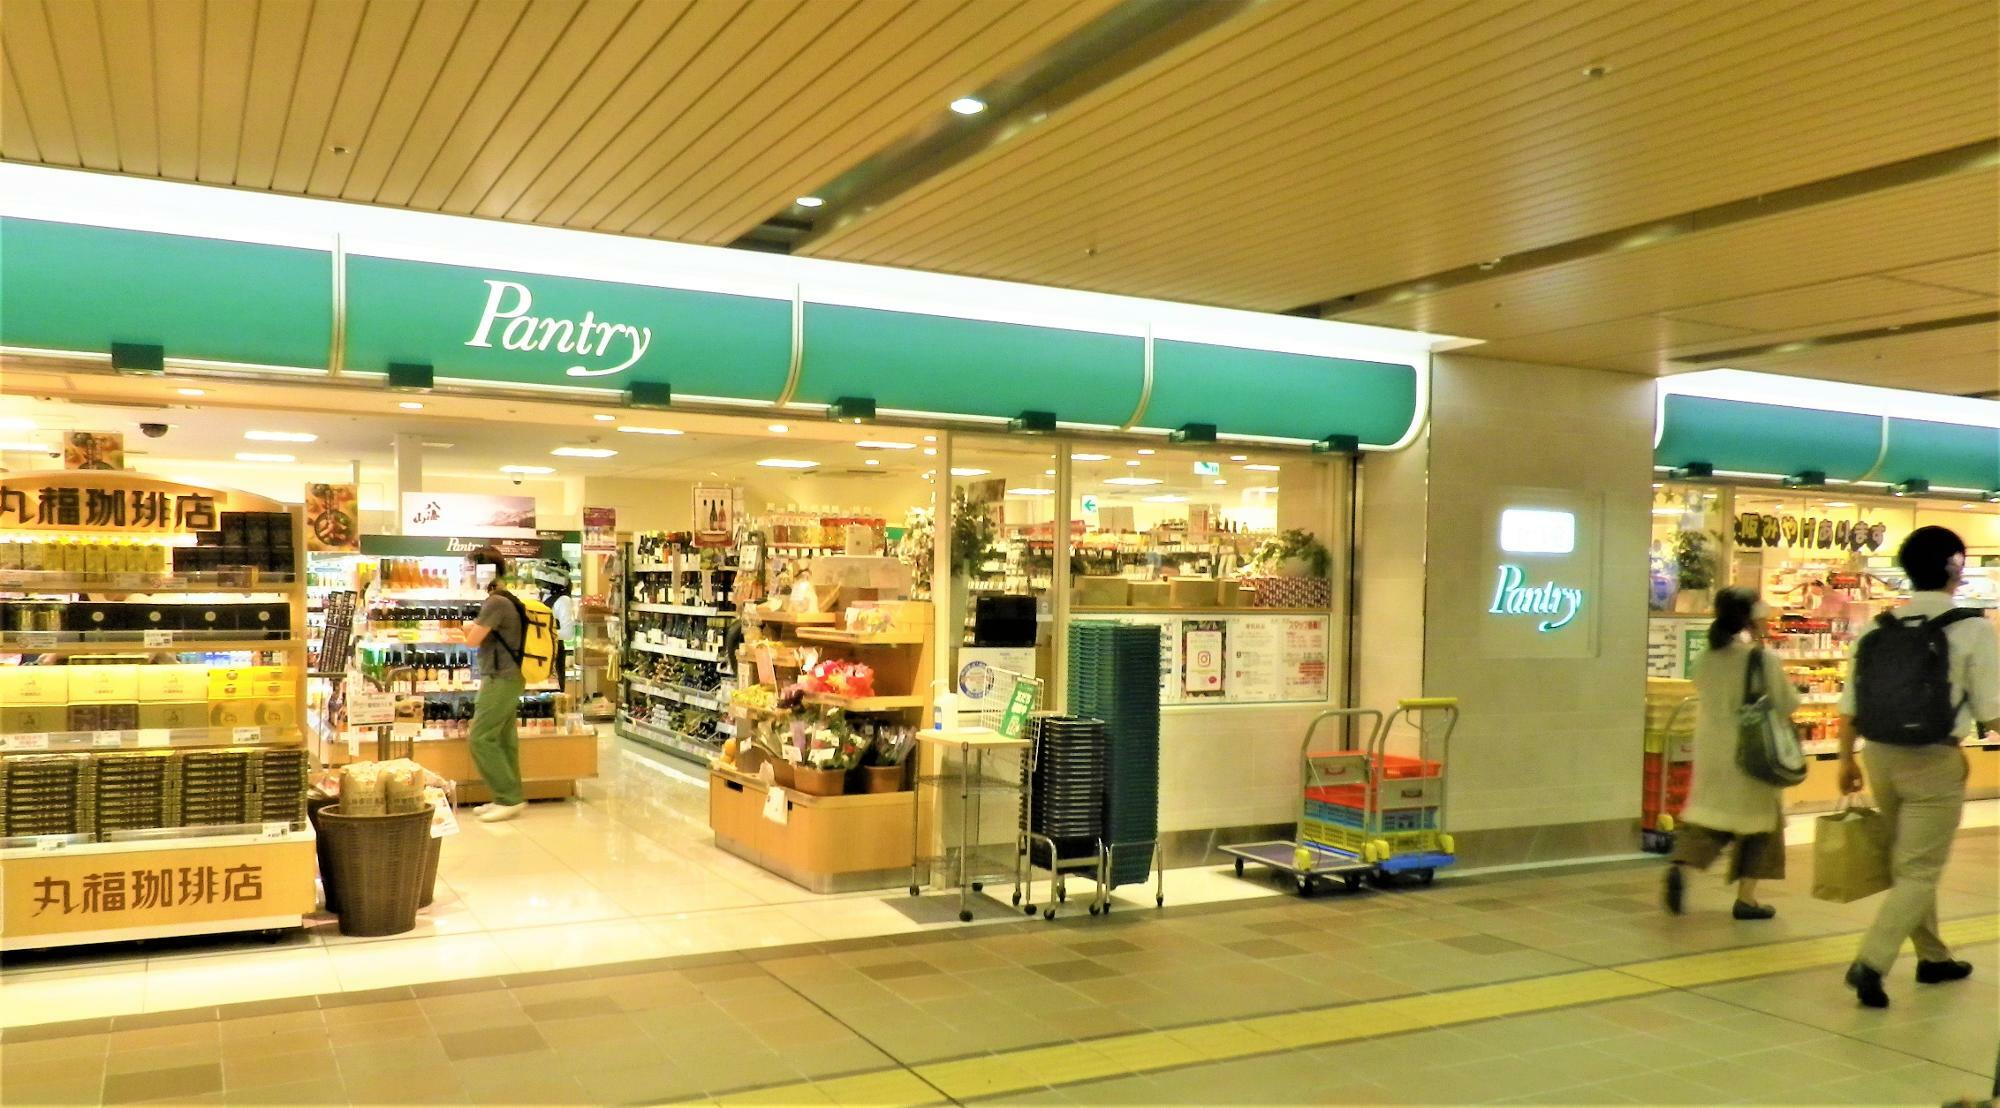 夜遅くまで営業されているので、駅利用者の救世主にもなっている新大阪駅の食品スーパー「Pantry」。